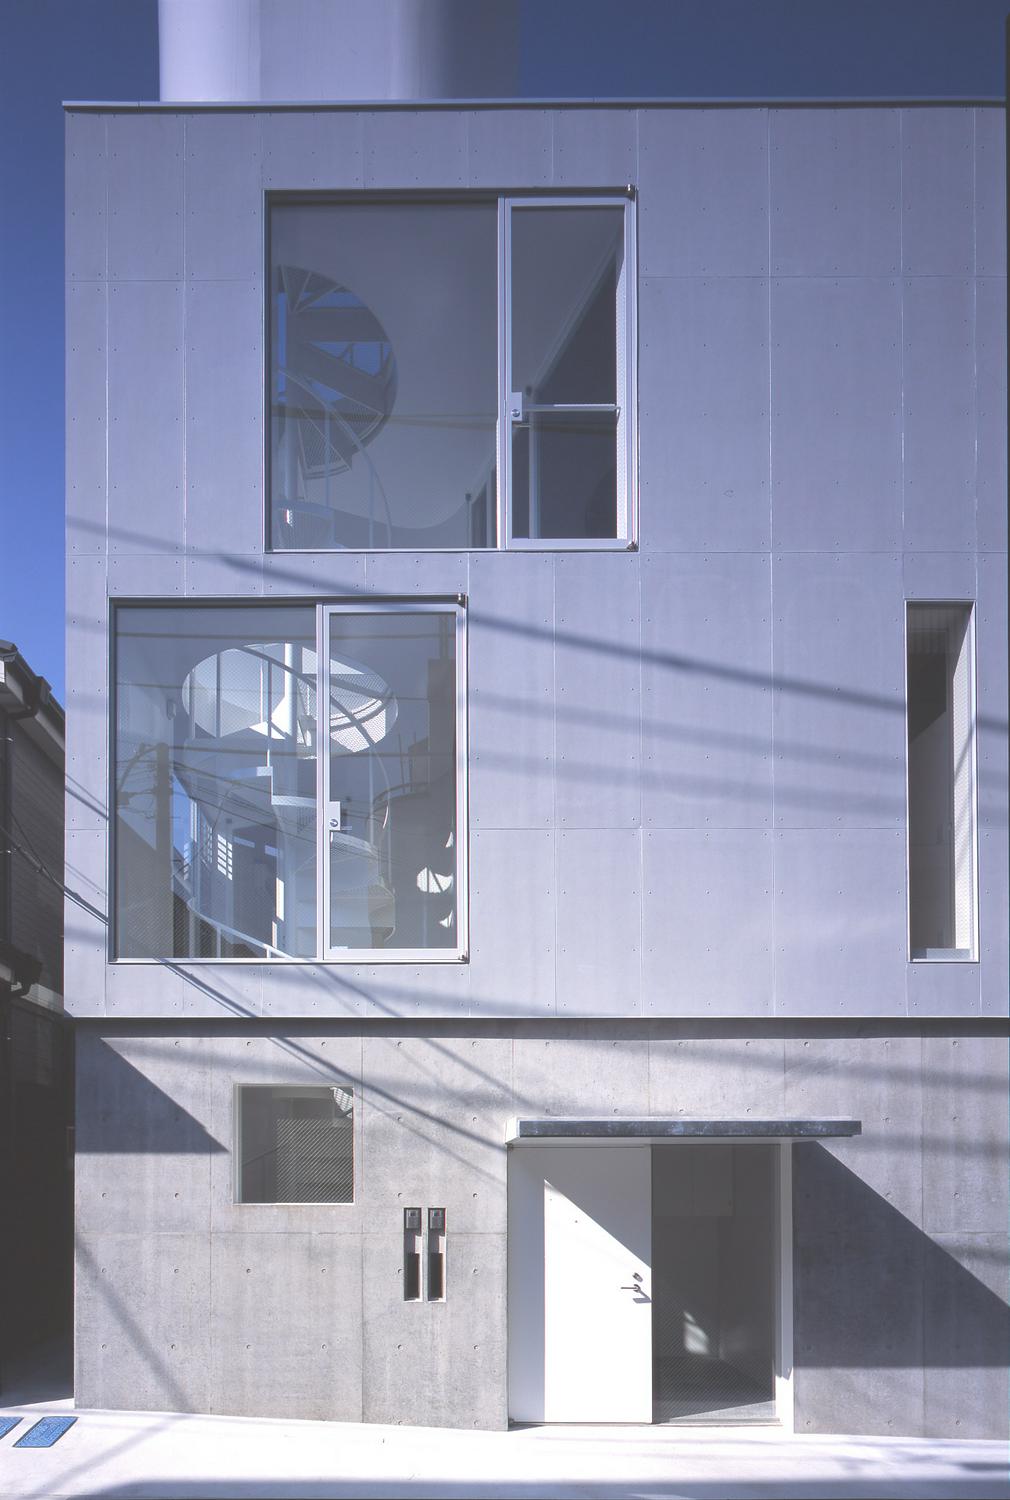 Image of "多摩川の二世帯住宅　〜緩やかに繋げ、緩やかに仕切る〜", the work by architect : Manabu Naya (image number 3)